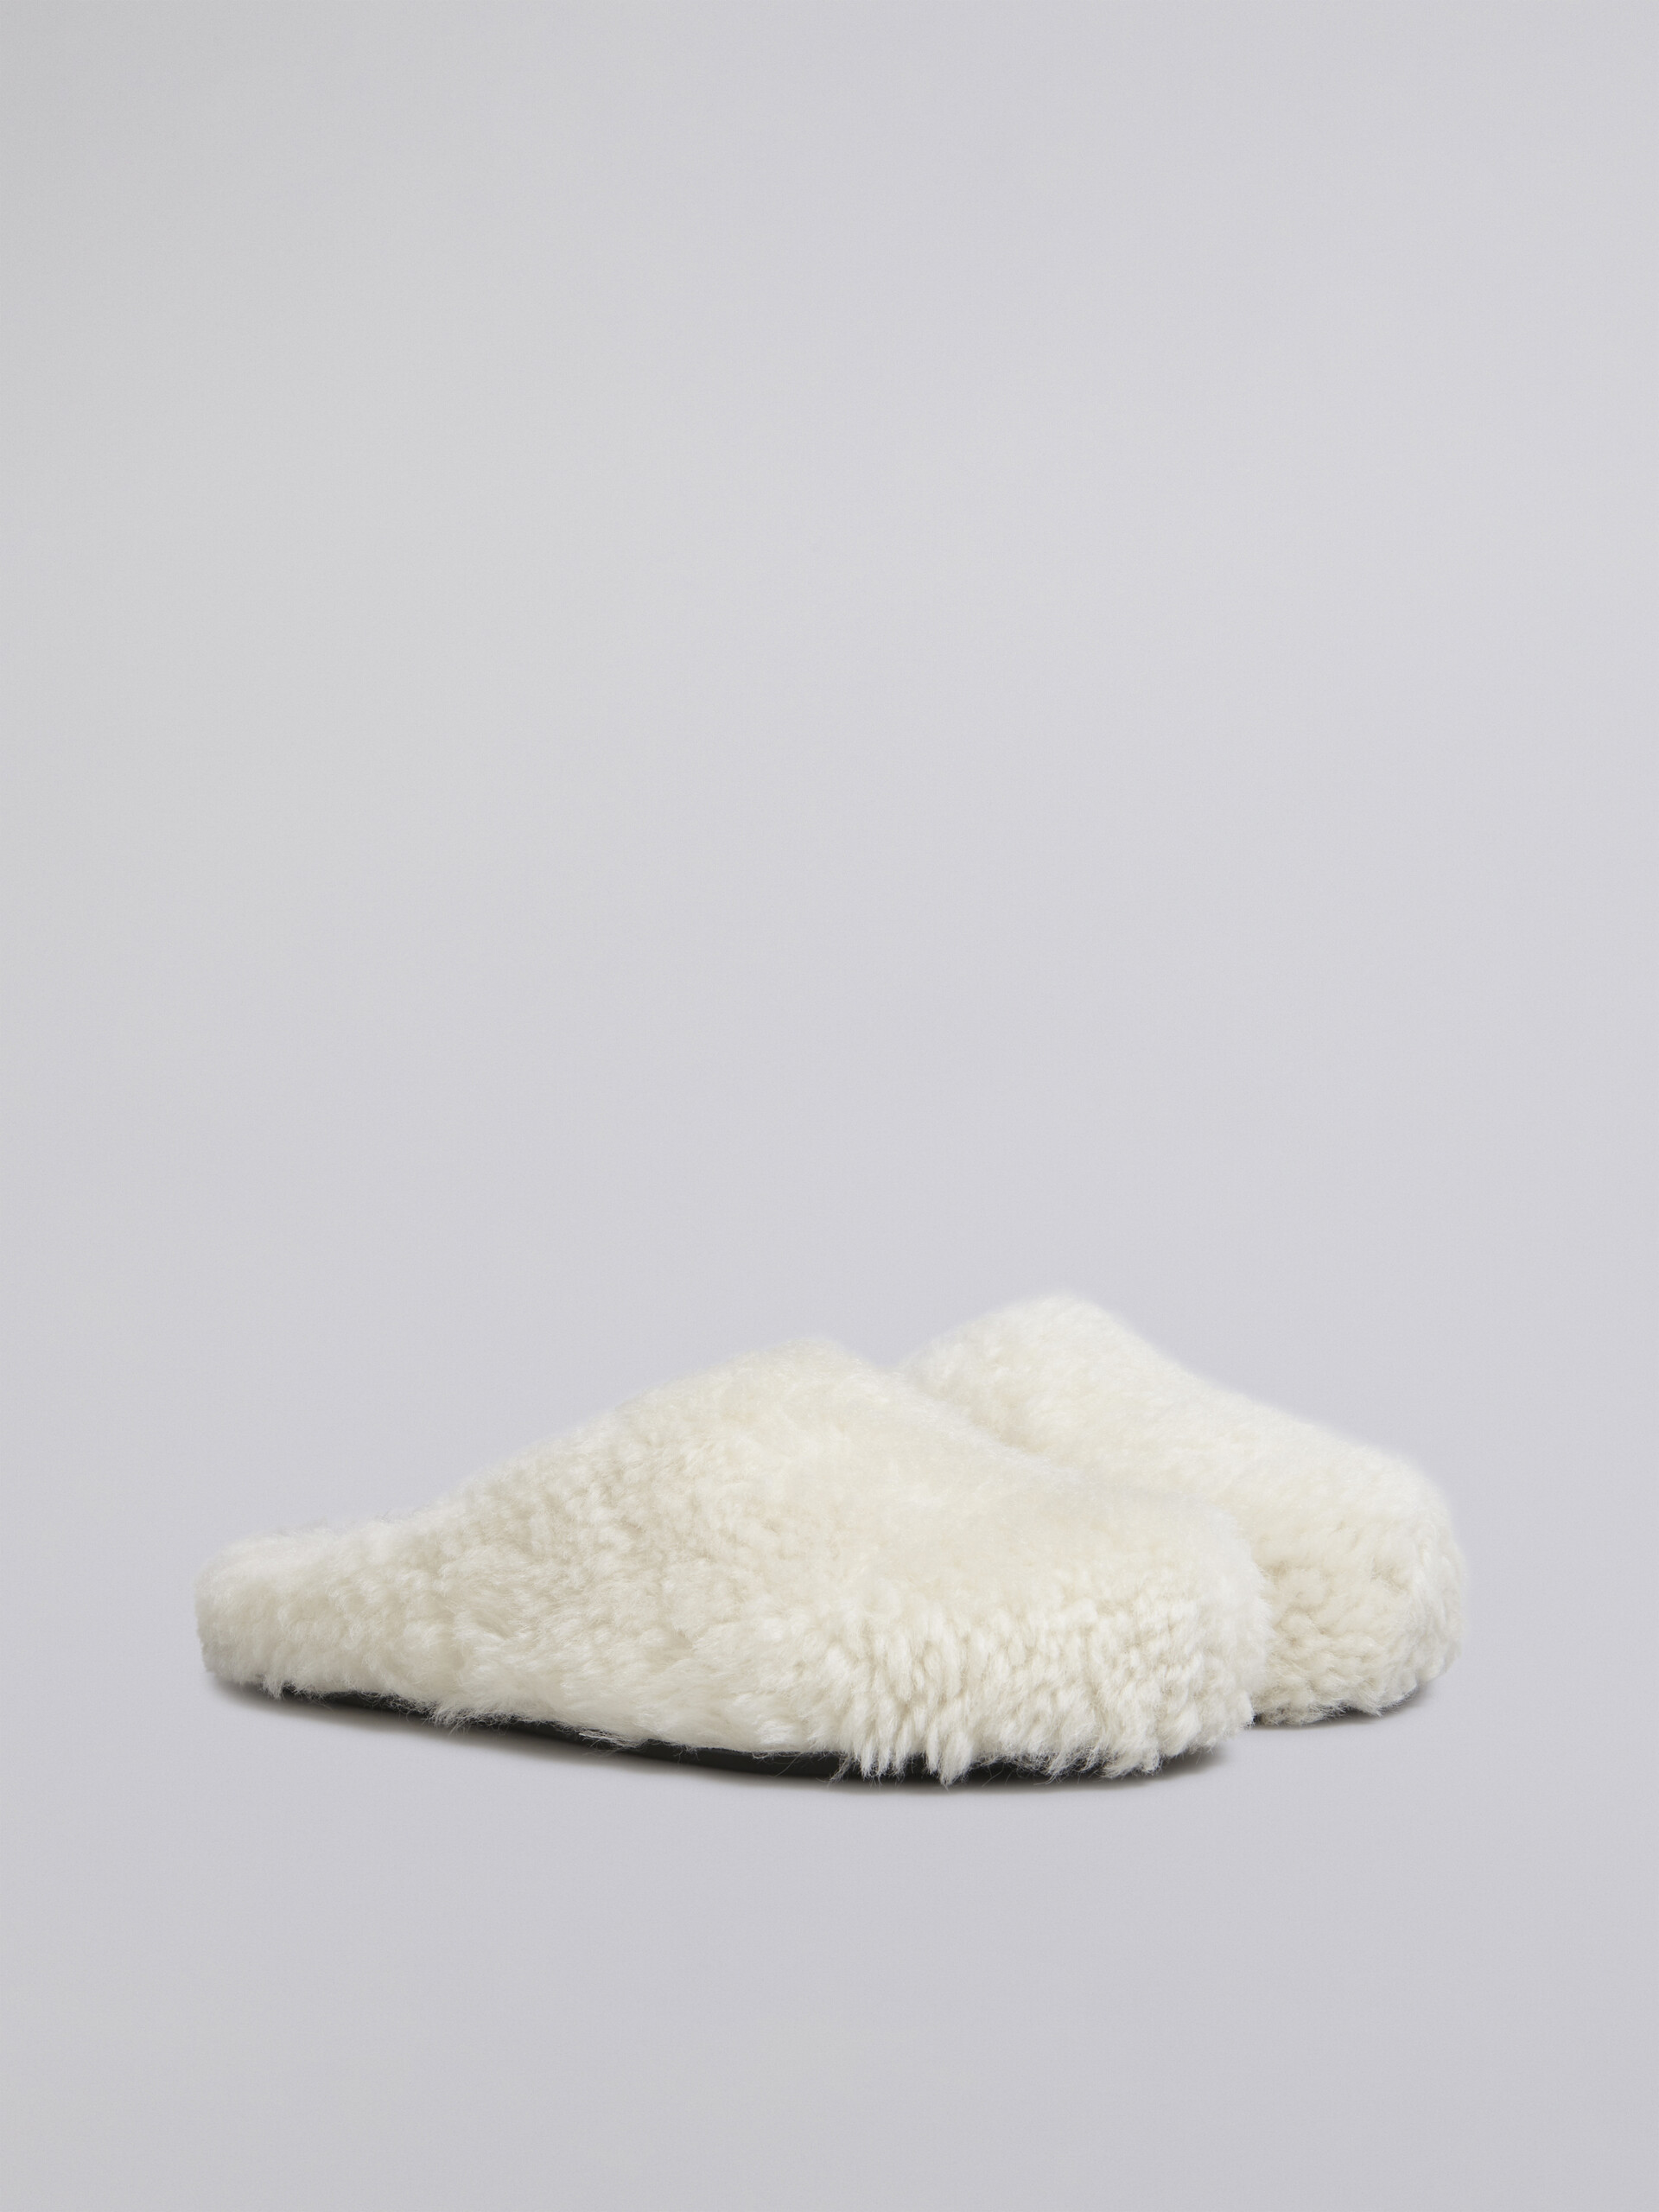 Fussbett blanco de pelo de oveja rizado - Zuecos - Image 2